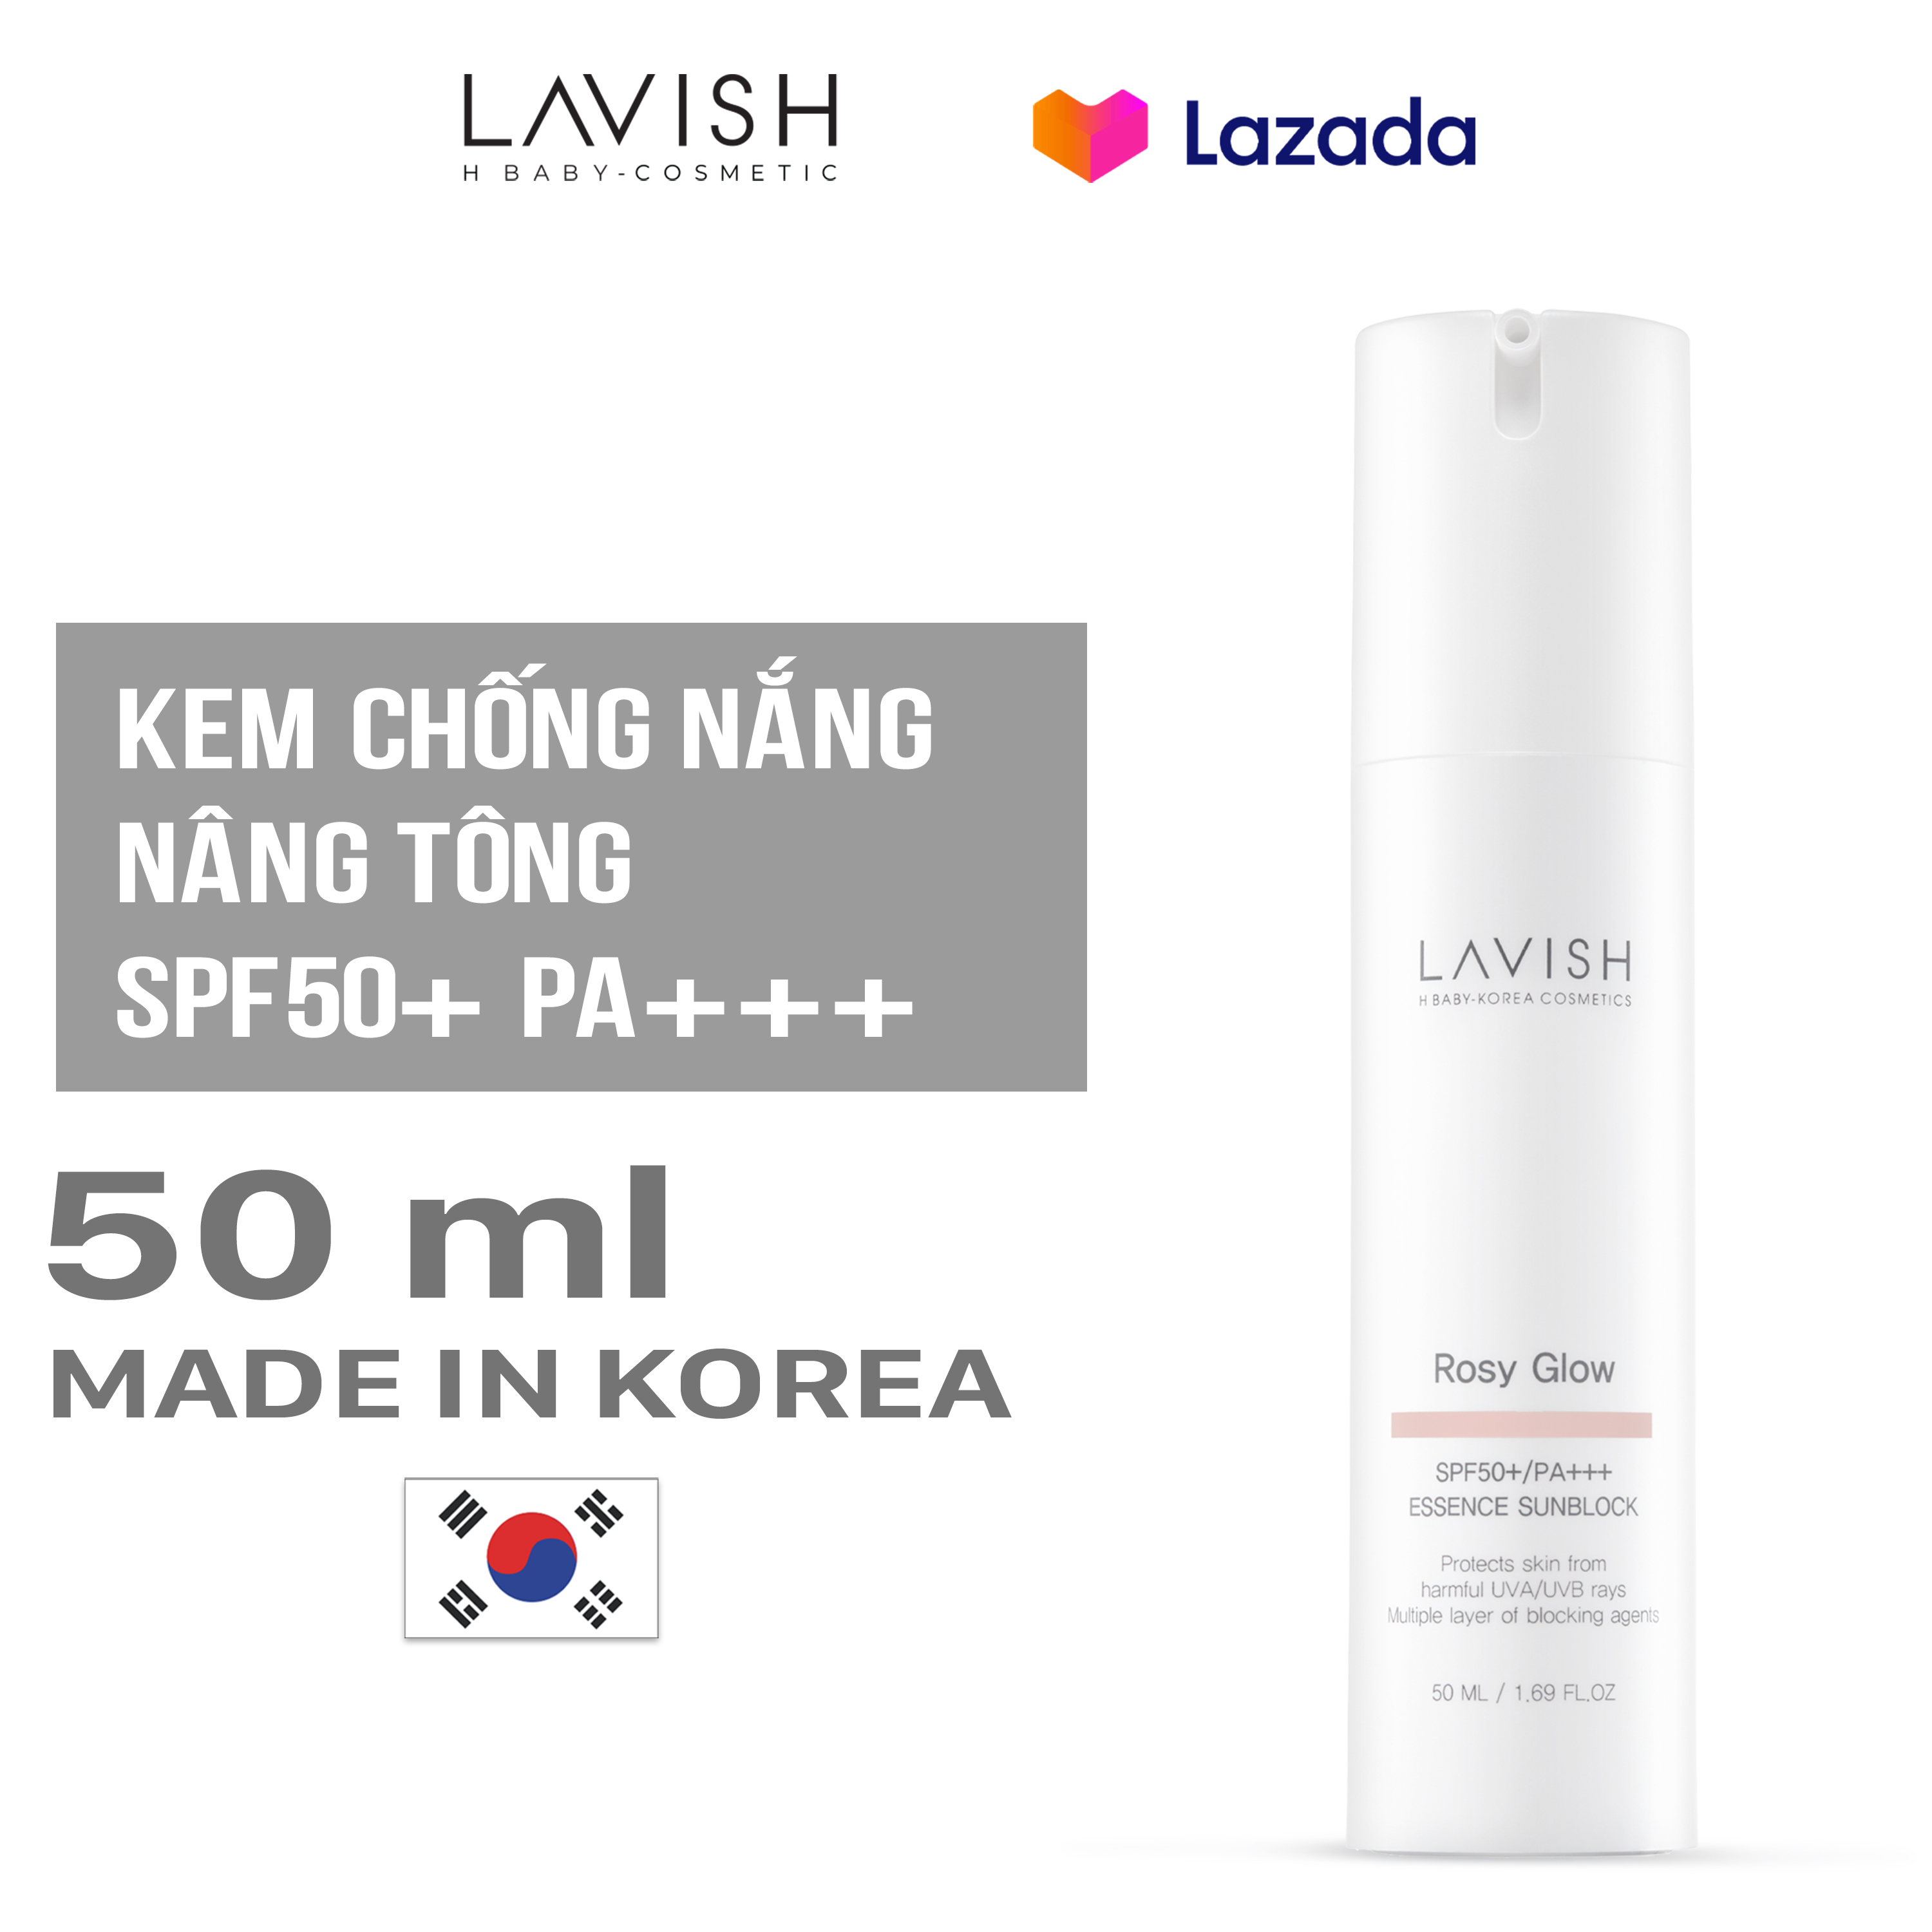 LAVISH H BABY ESSENCE SUNBLOCK SPF50+ PA+++ - 50ml - Kem chống nắng dưỡng trắng chống lão hoá